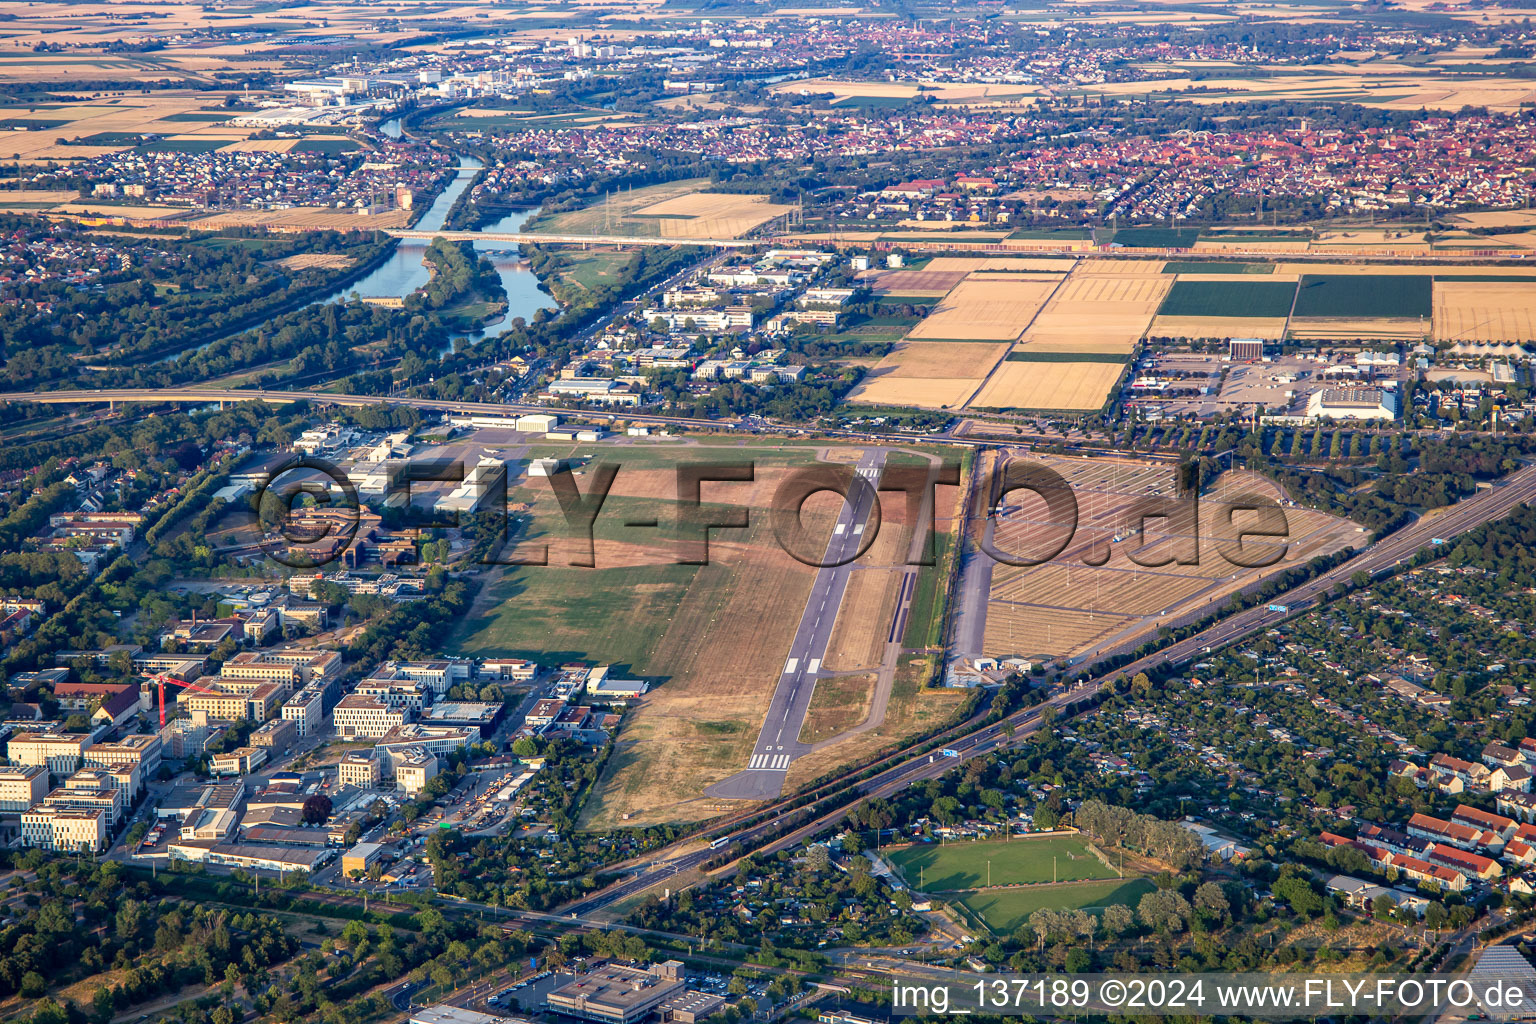 Vue aérienne de Aéroport urbain Mannheim depuis le sud-est à le quartier Neuostheim in Mannheim dans le département Bade-Wurtemberg, Allemagne